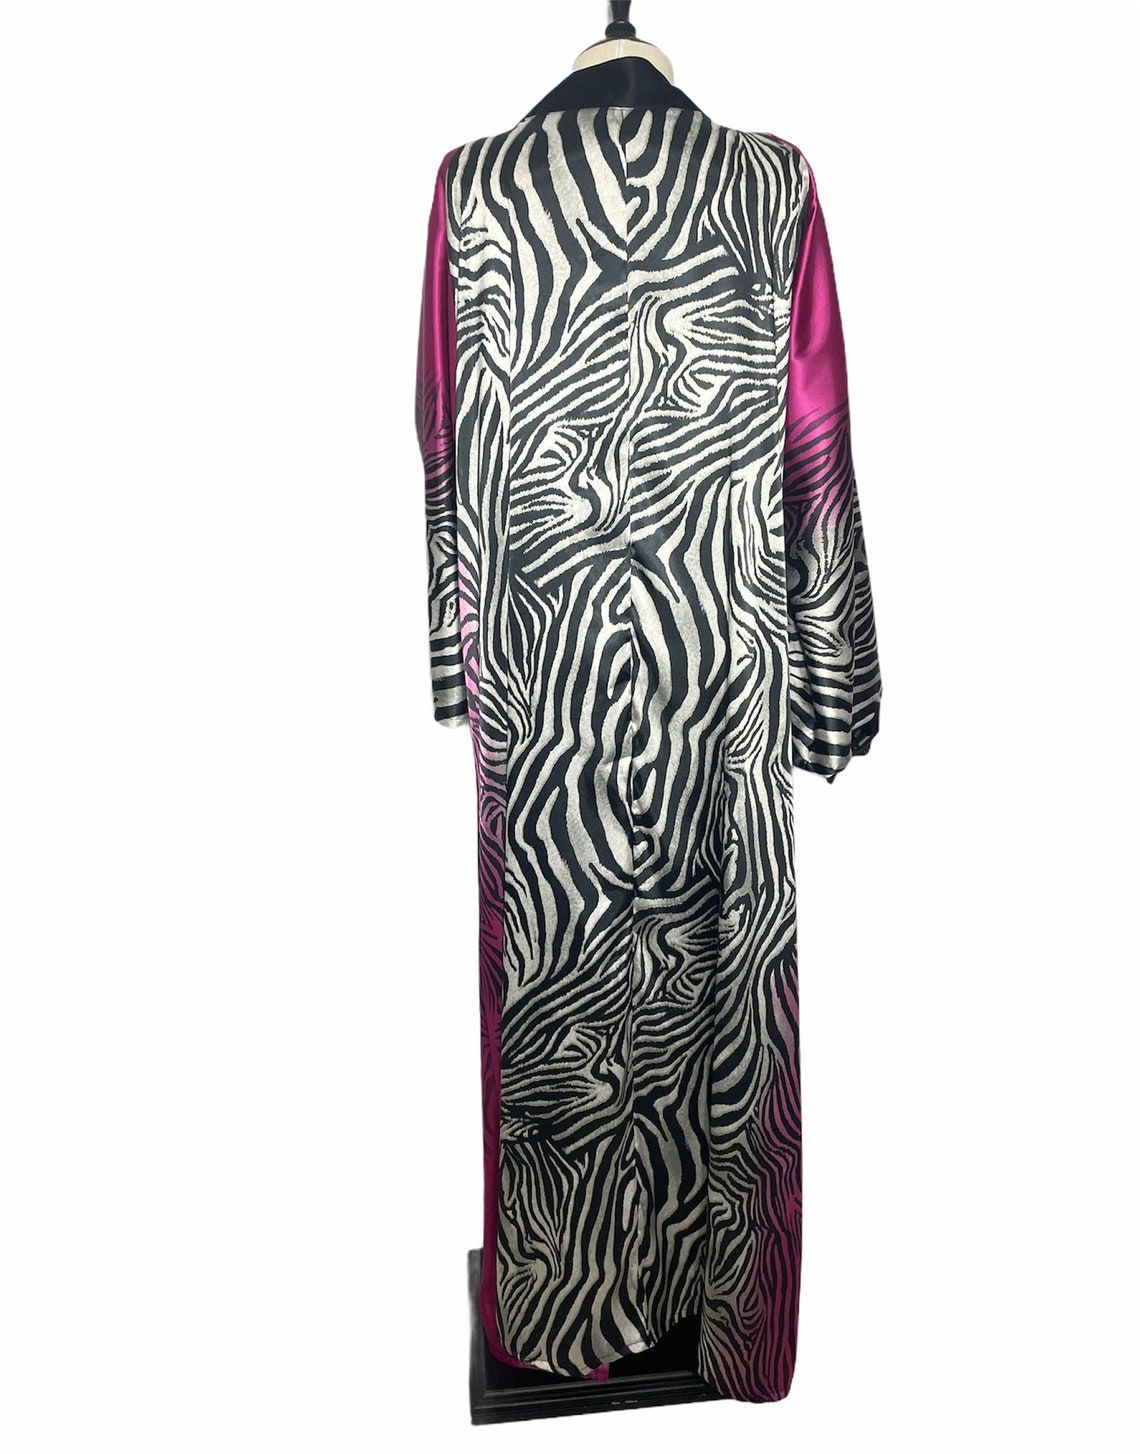 Pink Satin Kimono Jacket With Zebra Print Design Long Kimono - Etsy